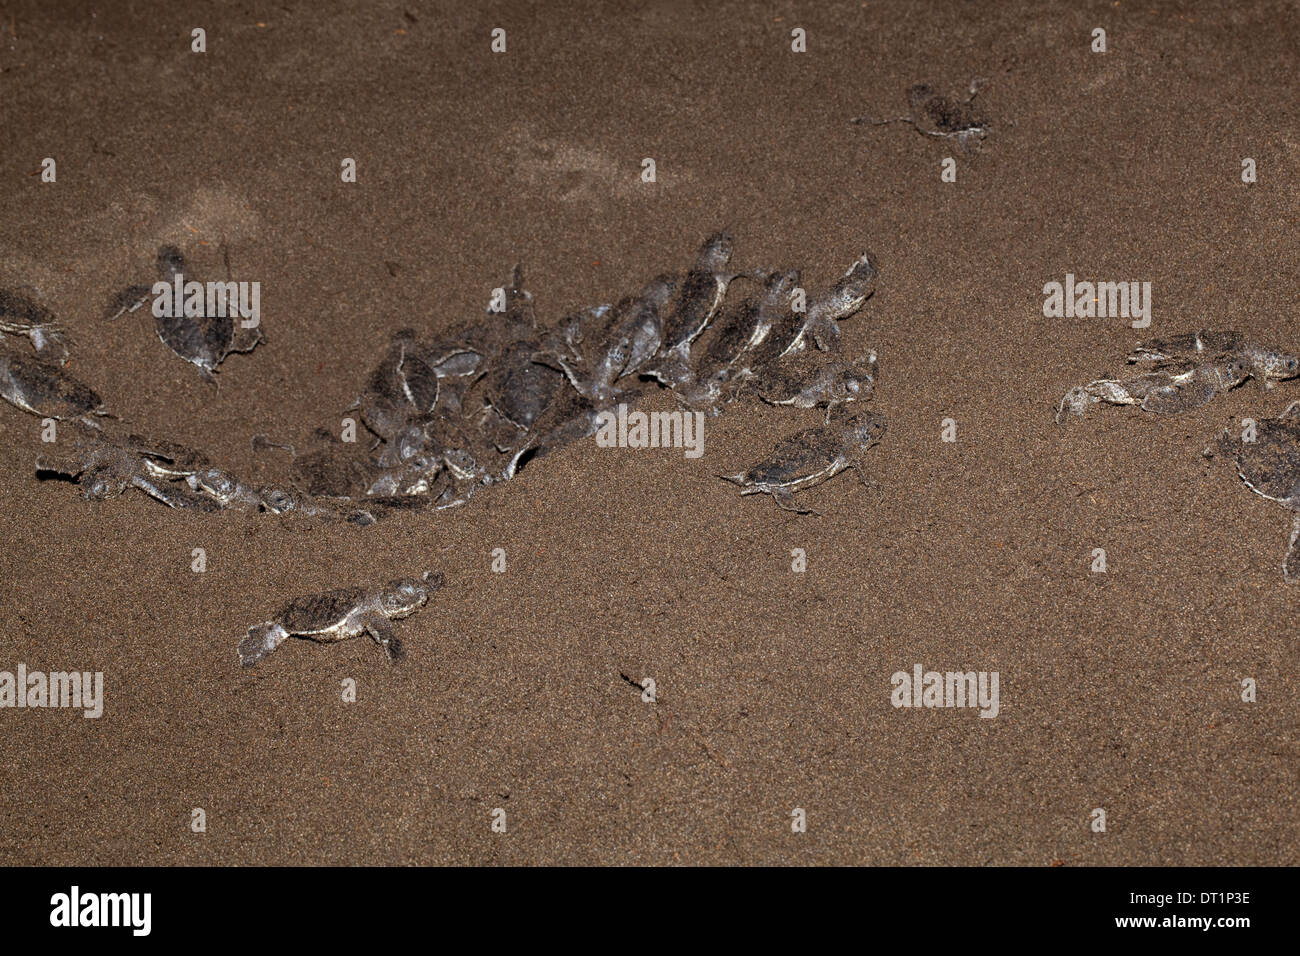 Les tortues vertes (Chelonia mydas). Les nouveau-nés en laissant un départ synchronisé à partir de la cavité de nidification, dans une plage de sable volcanique. Banque D'Images